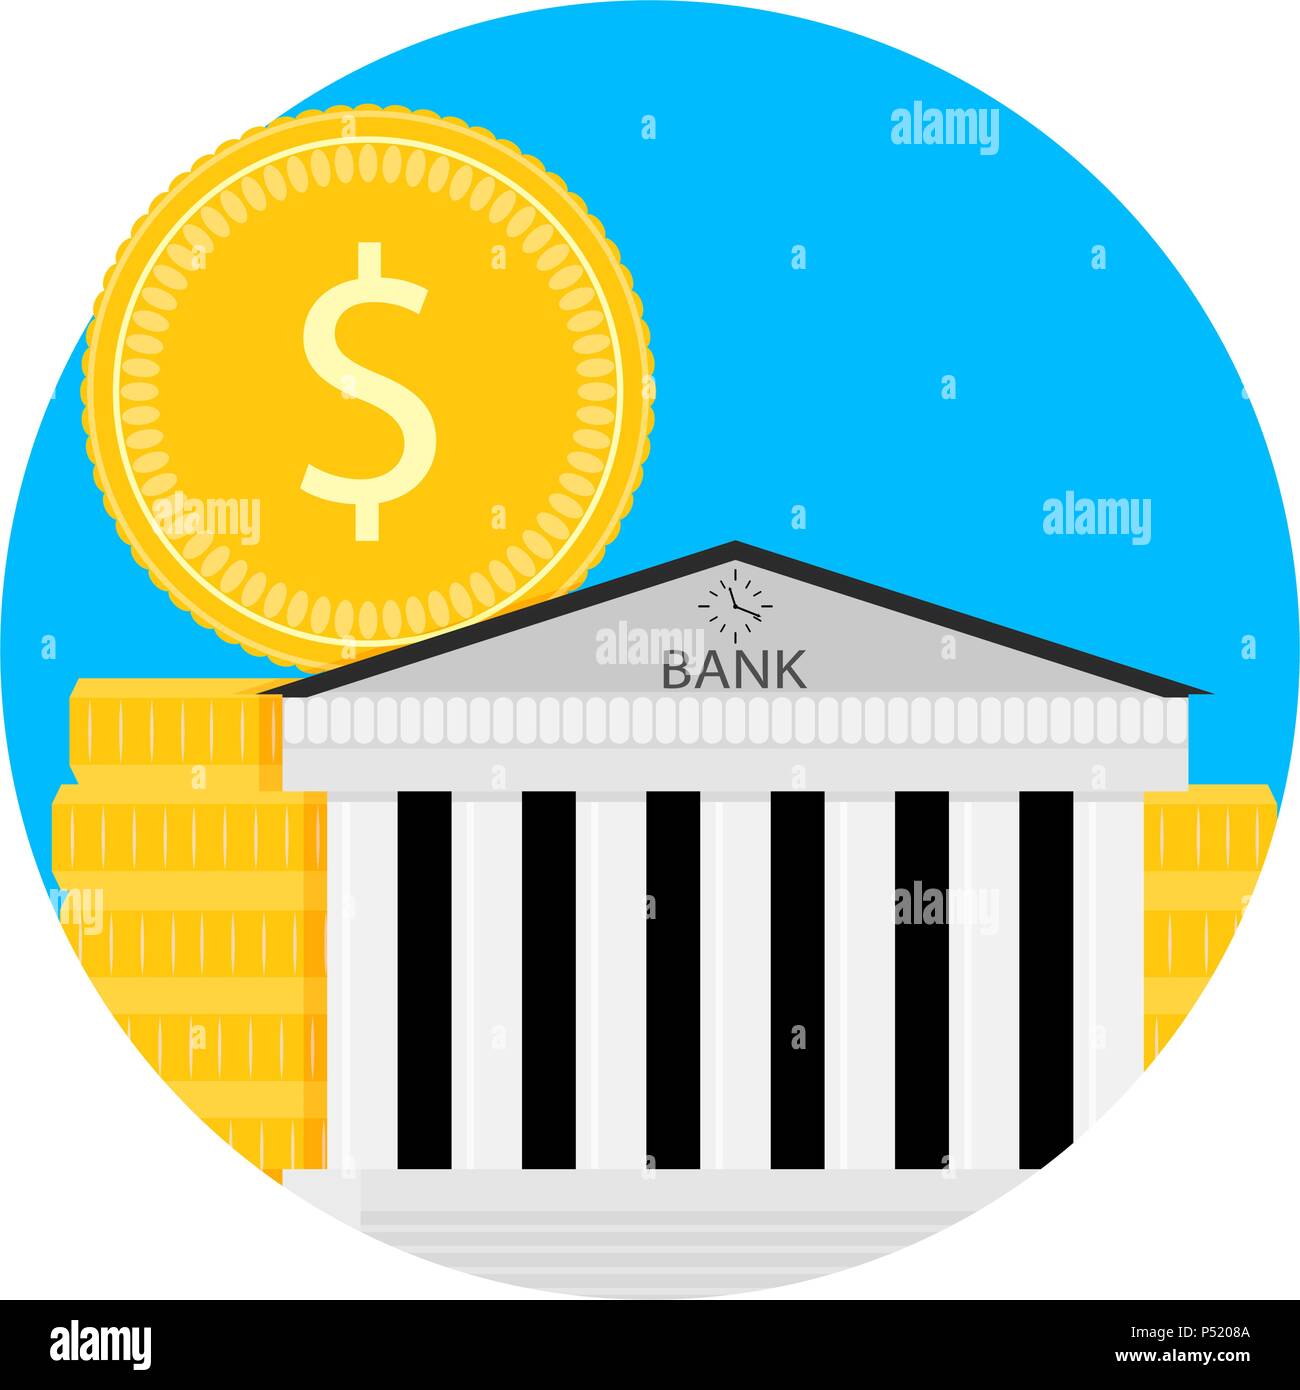 Bank Financial Kapitalisierung Symbol. Capital Fund und Einsparungen, die Einnahmen finanzieren, der Kapitalisierung von Strategie. Vector Illustration Stock Vektor